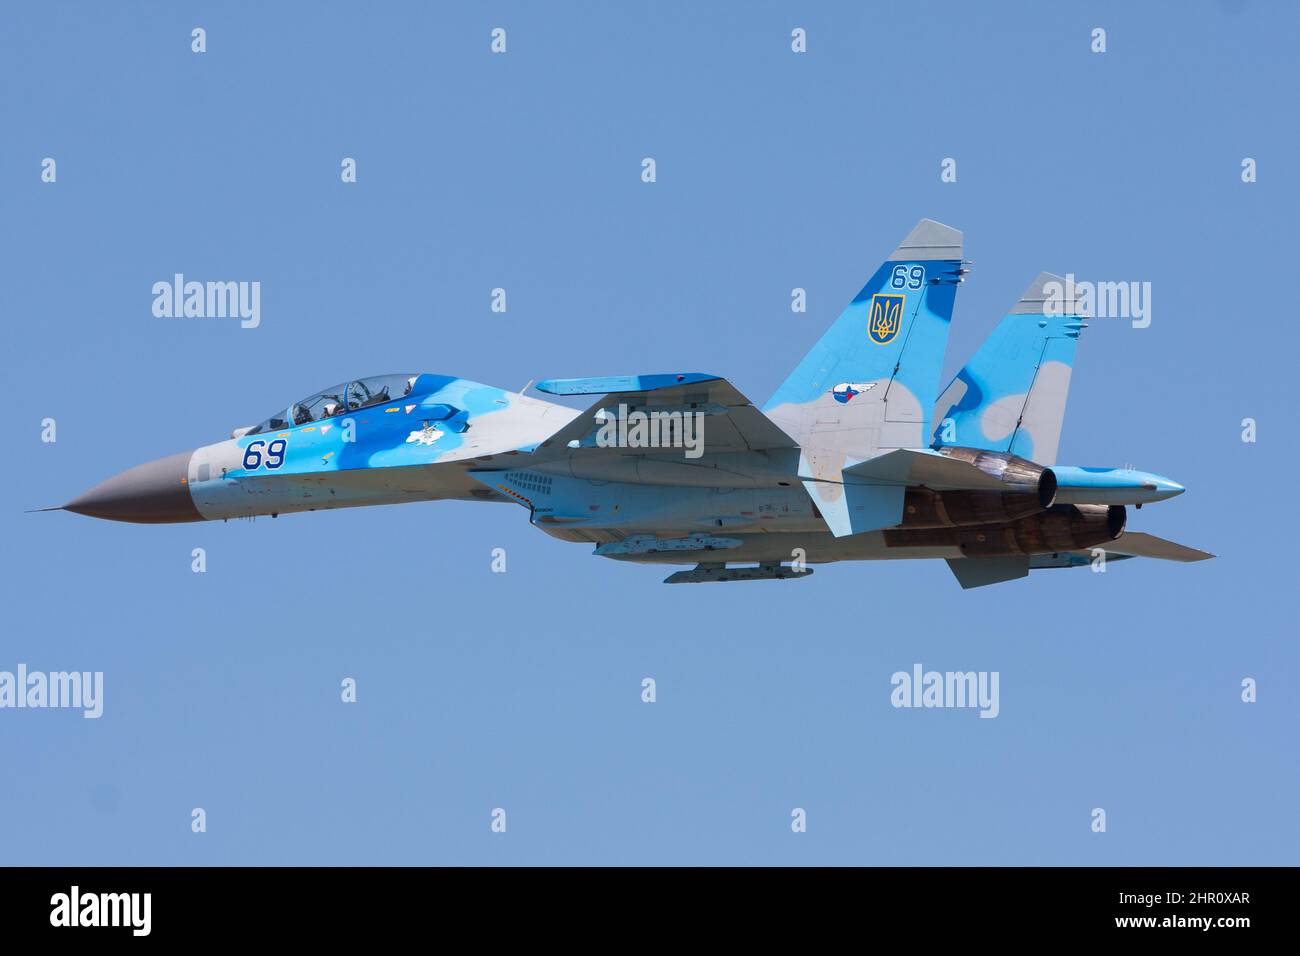 L'armée de l'air ukrainienne Sukhoi SU-27 avion de chasse militaire dans l'air devant le ciel bleu Banque D'Images